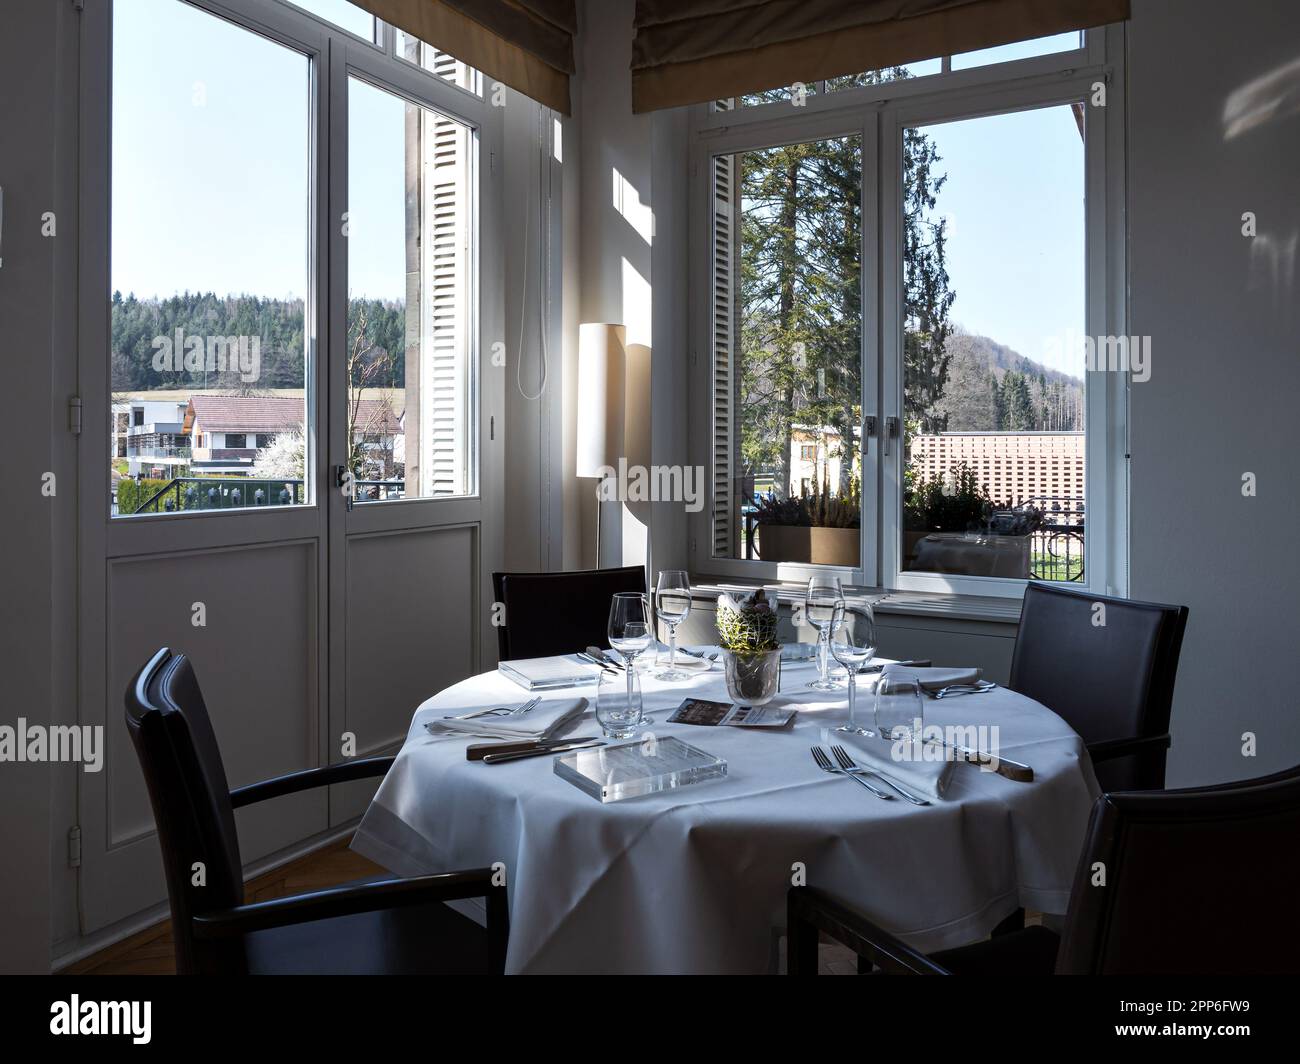 Gemütliches Interieur des Restaurants. Raum gefüllt mit der Morgensonne. Tische sind gedeckt und bereit für den Empfang der Gäste. Wärme und Tragekomfort. Stockfoto